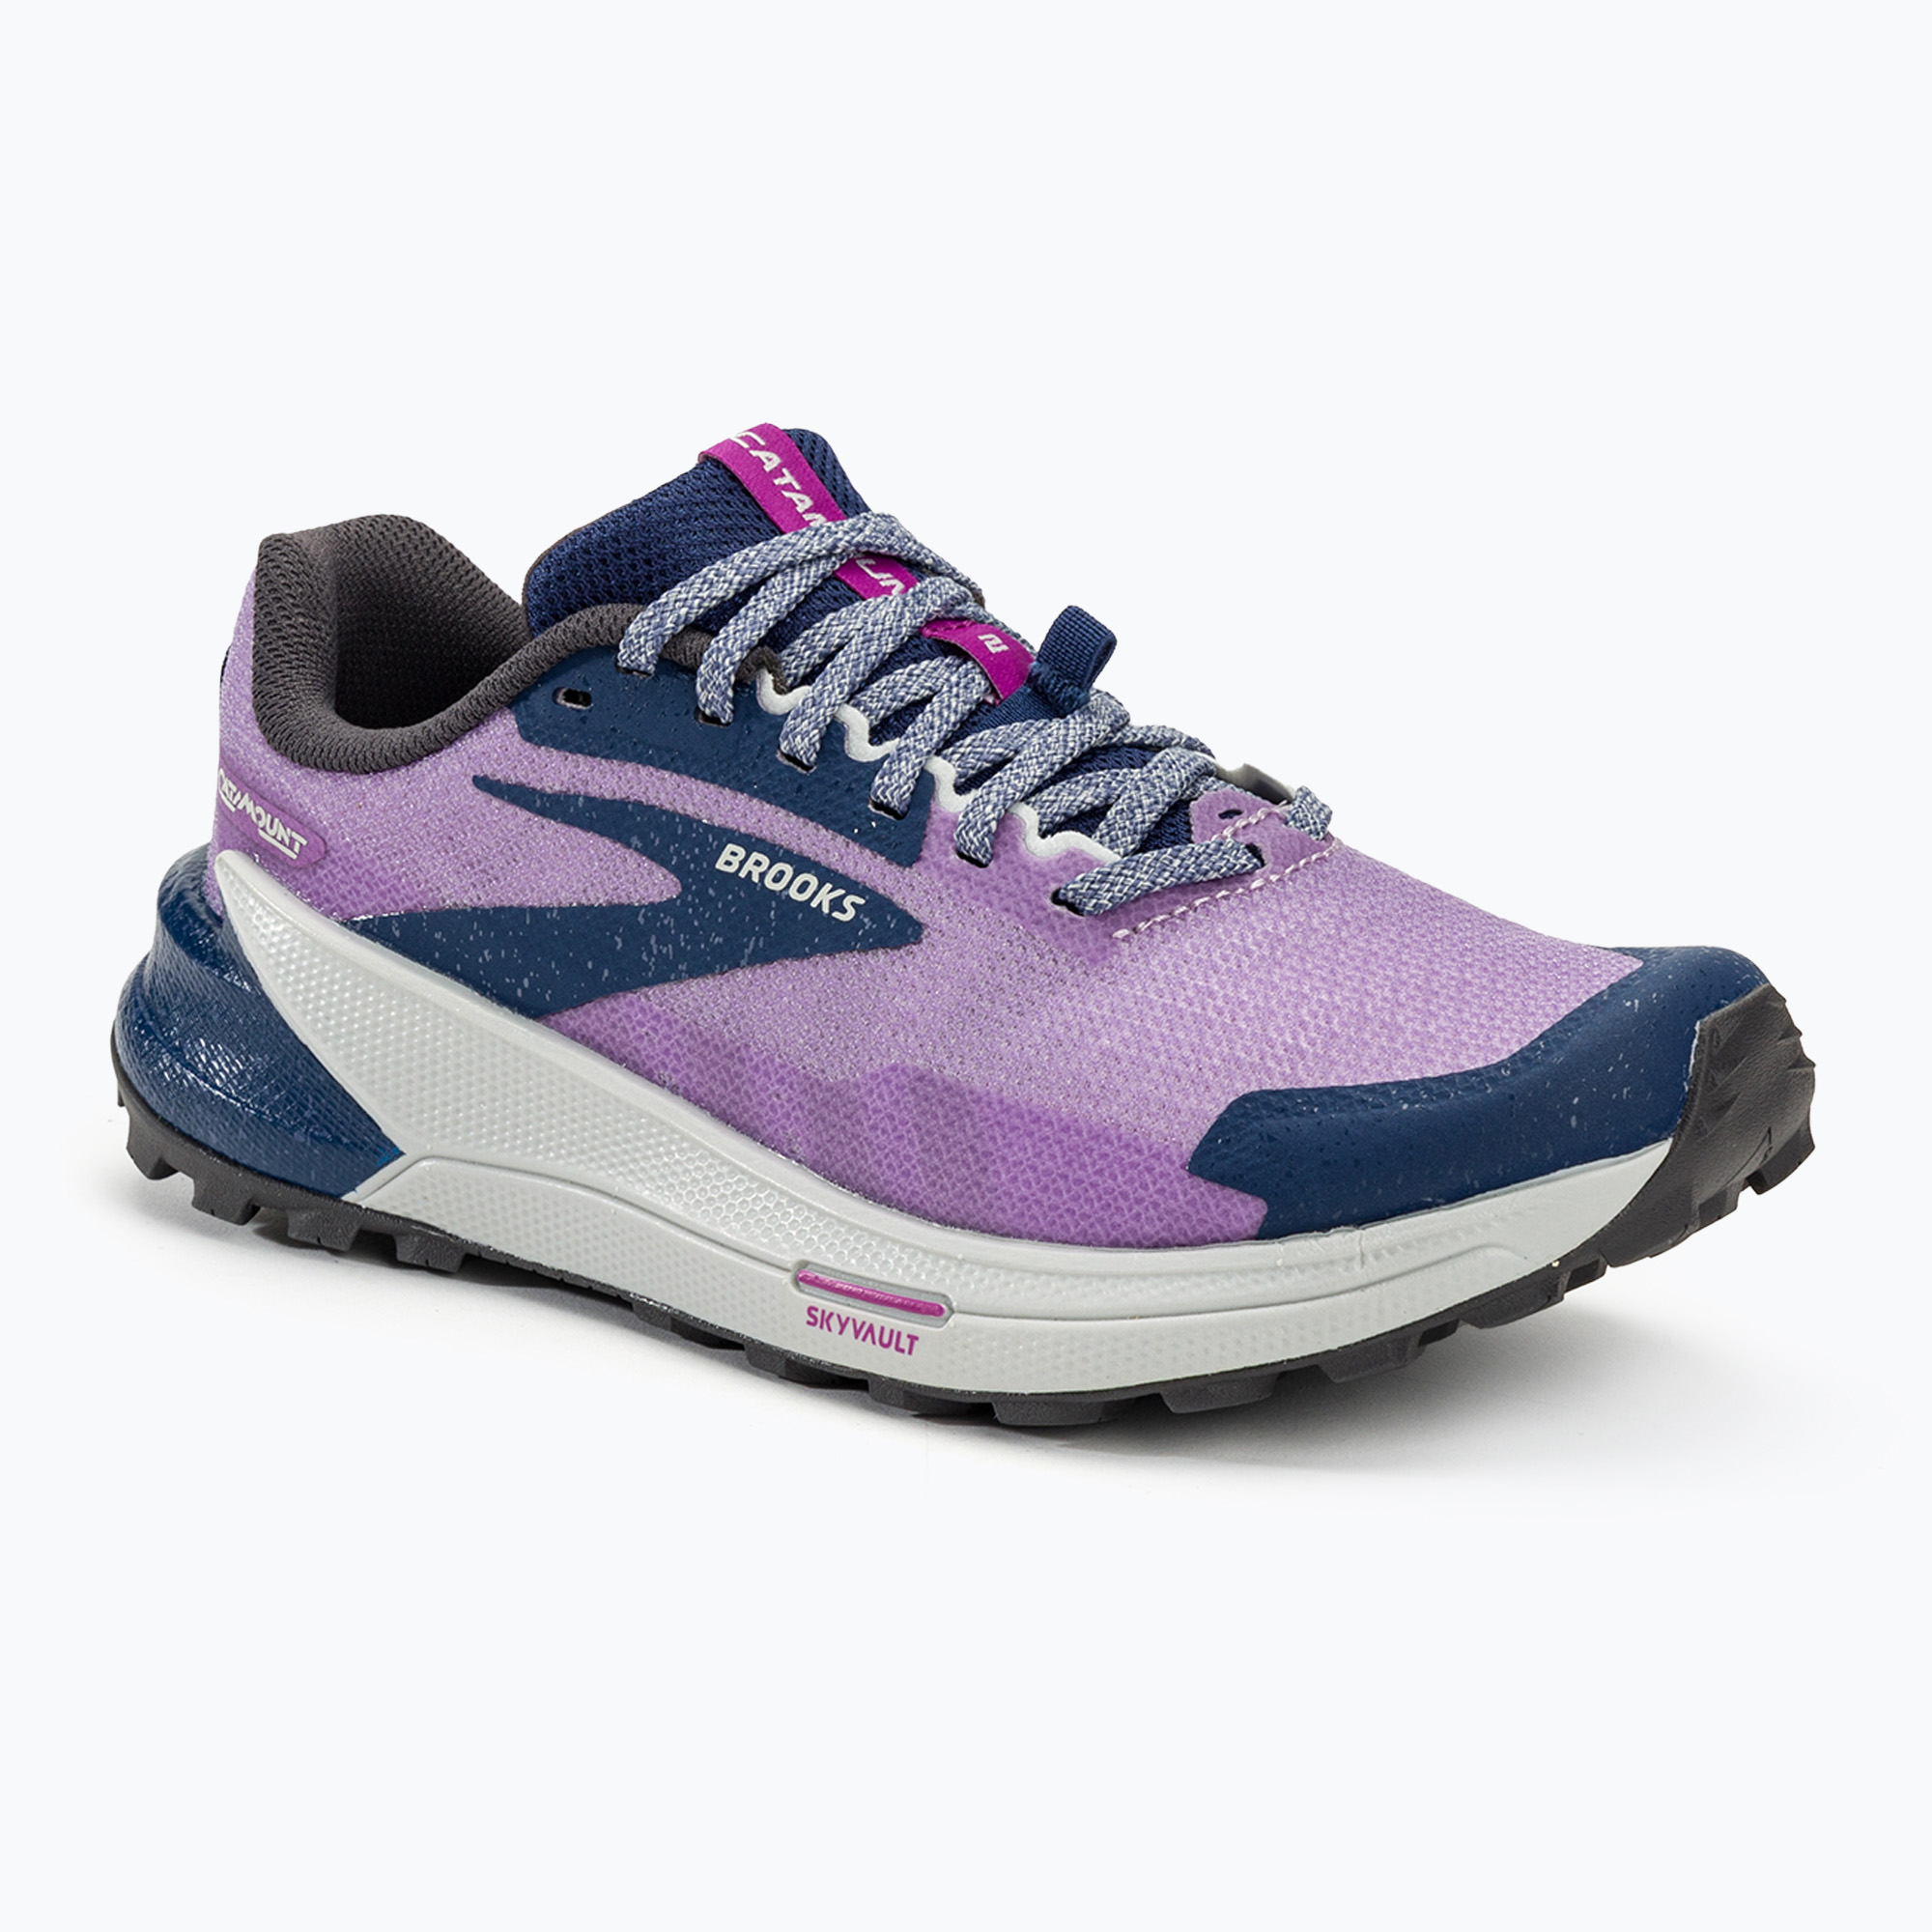 Brooks Catamount 2 pantofi de alergare pentru femei violet/navy/oyster